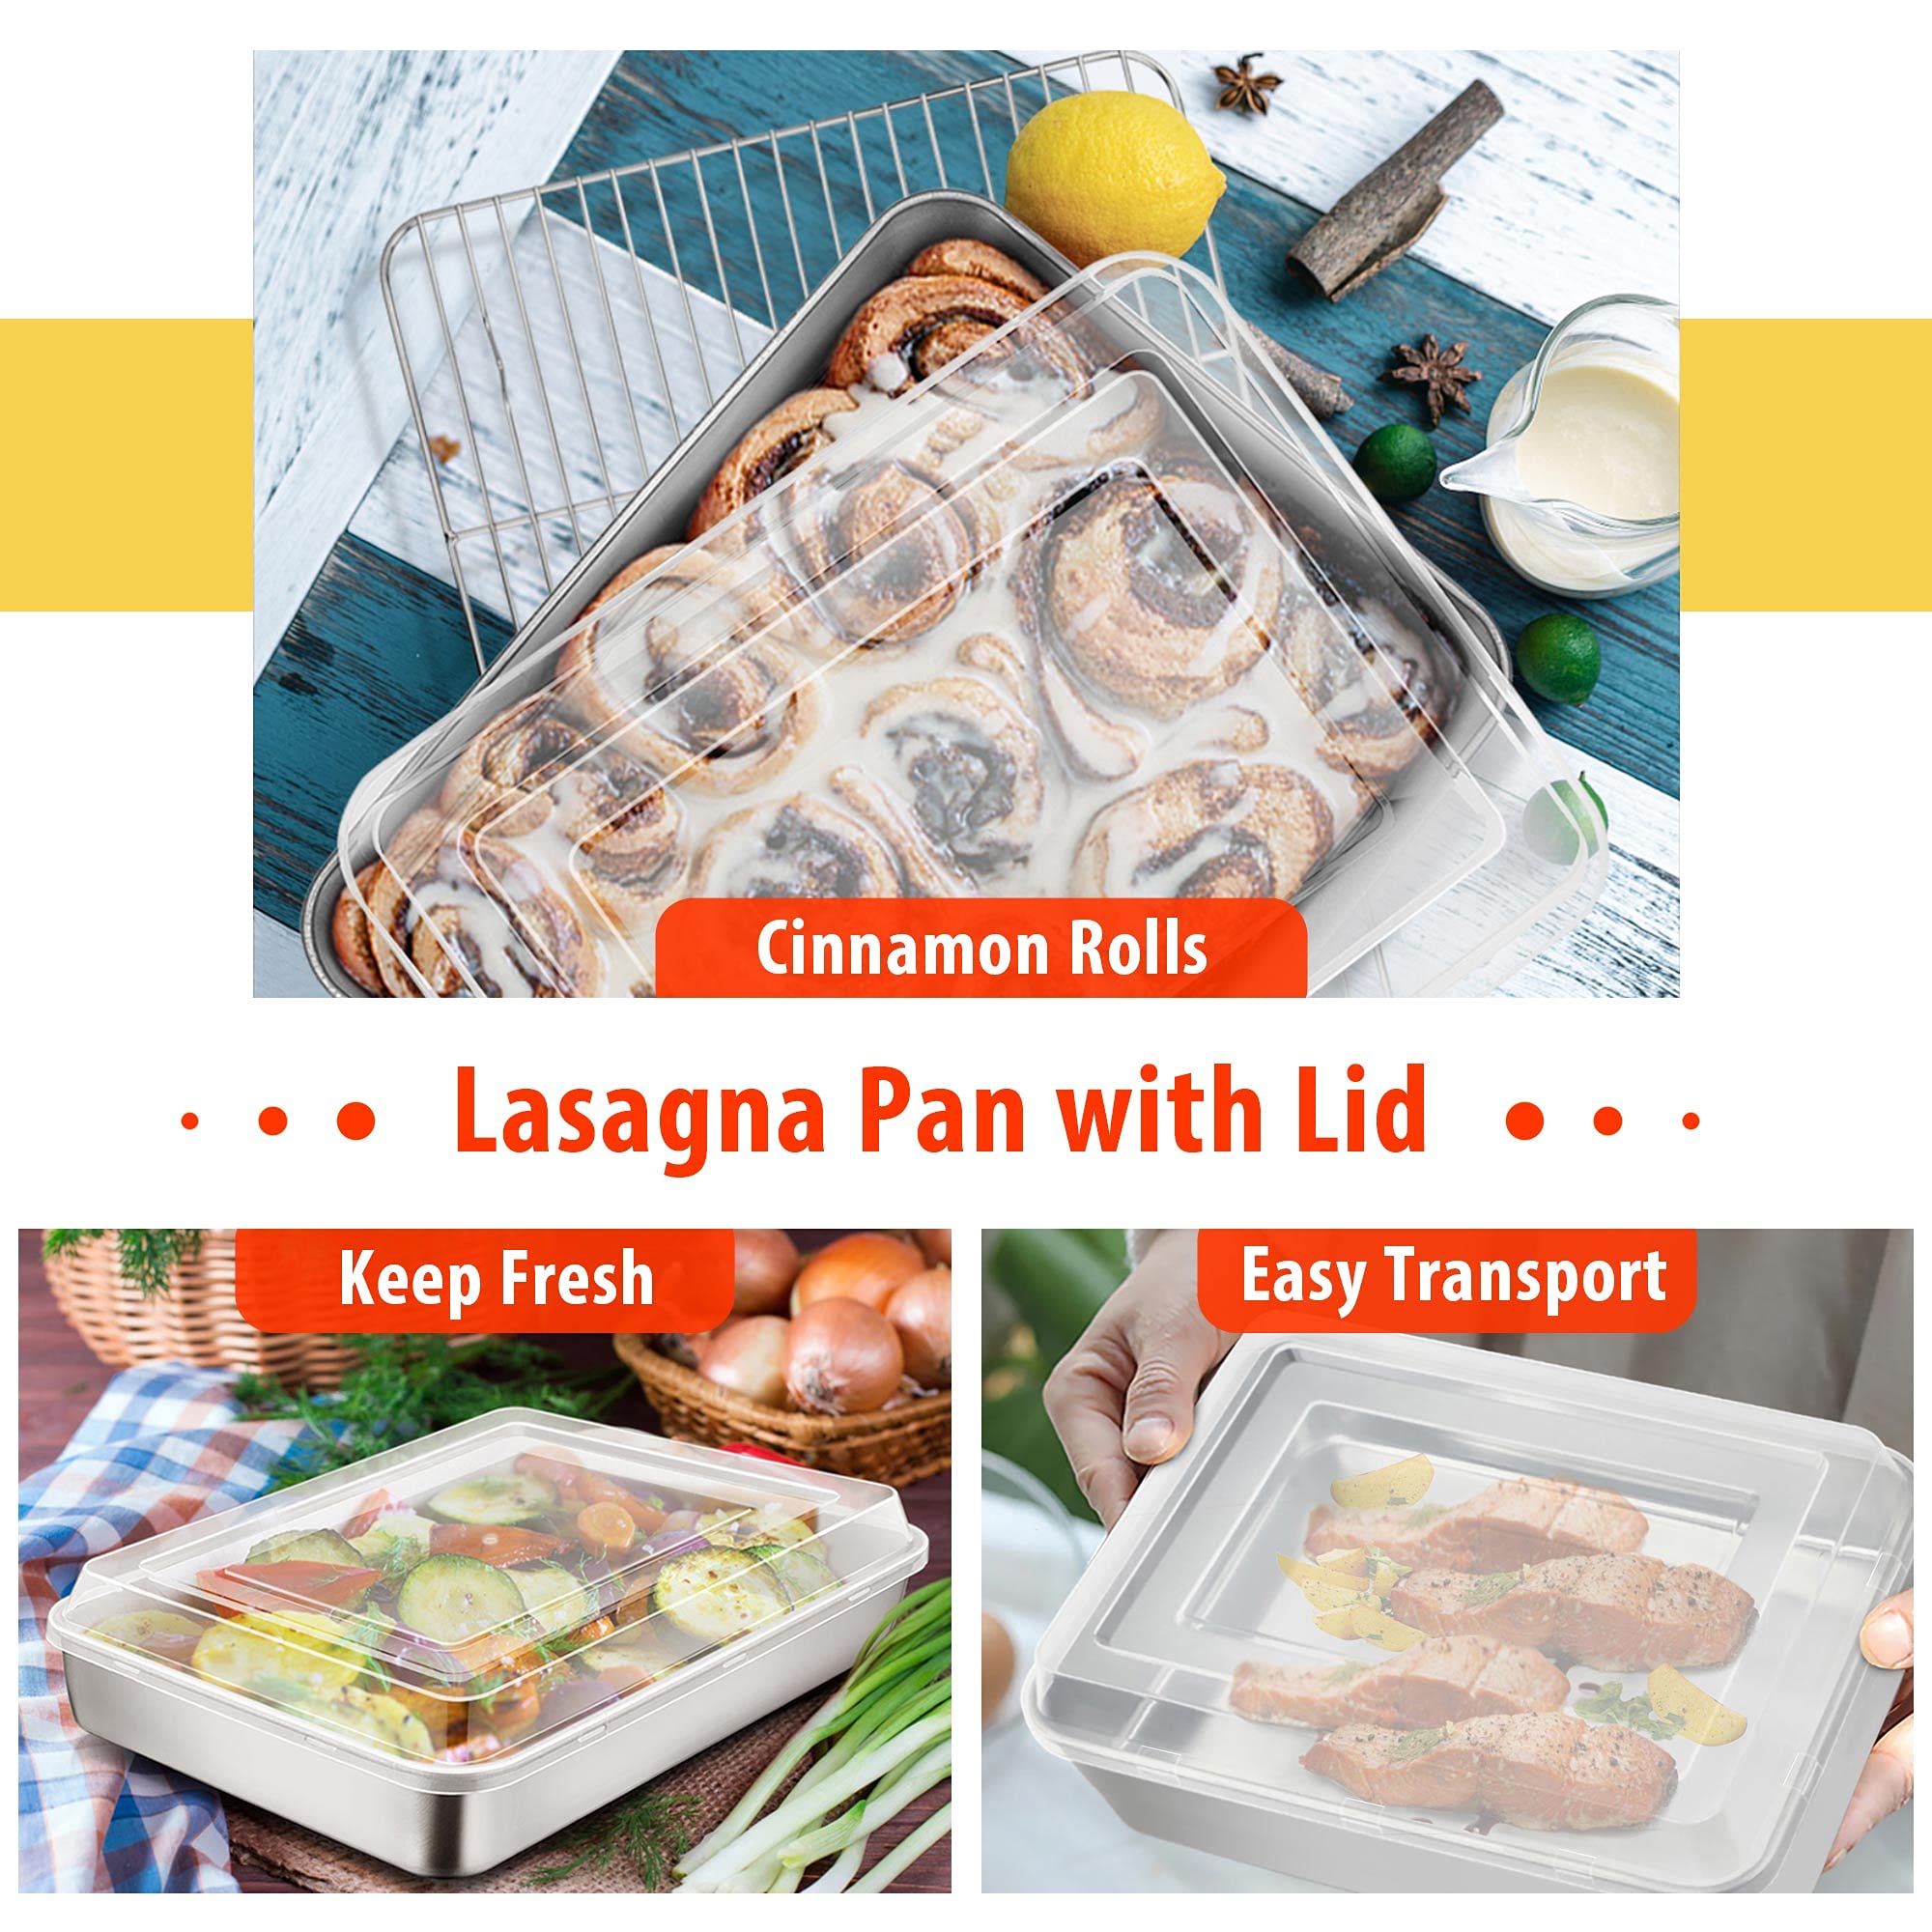 TeamFar Lasagna Pan(3 Pan & 3 Lids), 12⅖” & 10¼” & 9⅖” Cake Pan with Lids, Rectangular Baking Pan Stainless Steel Bakeware Set for Lasagna Cake Brownie, Healthy & Sturdy, Dishwasher Safe